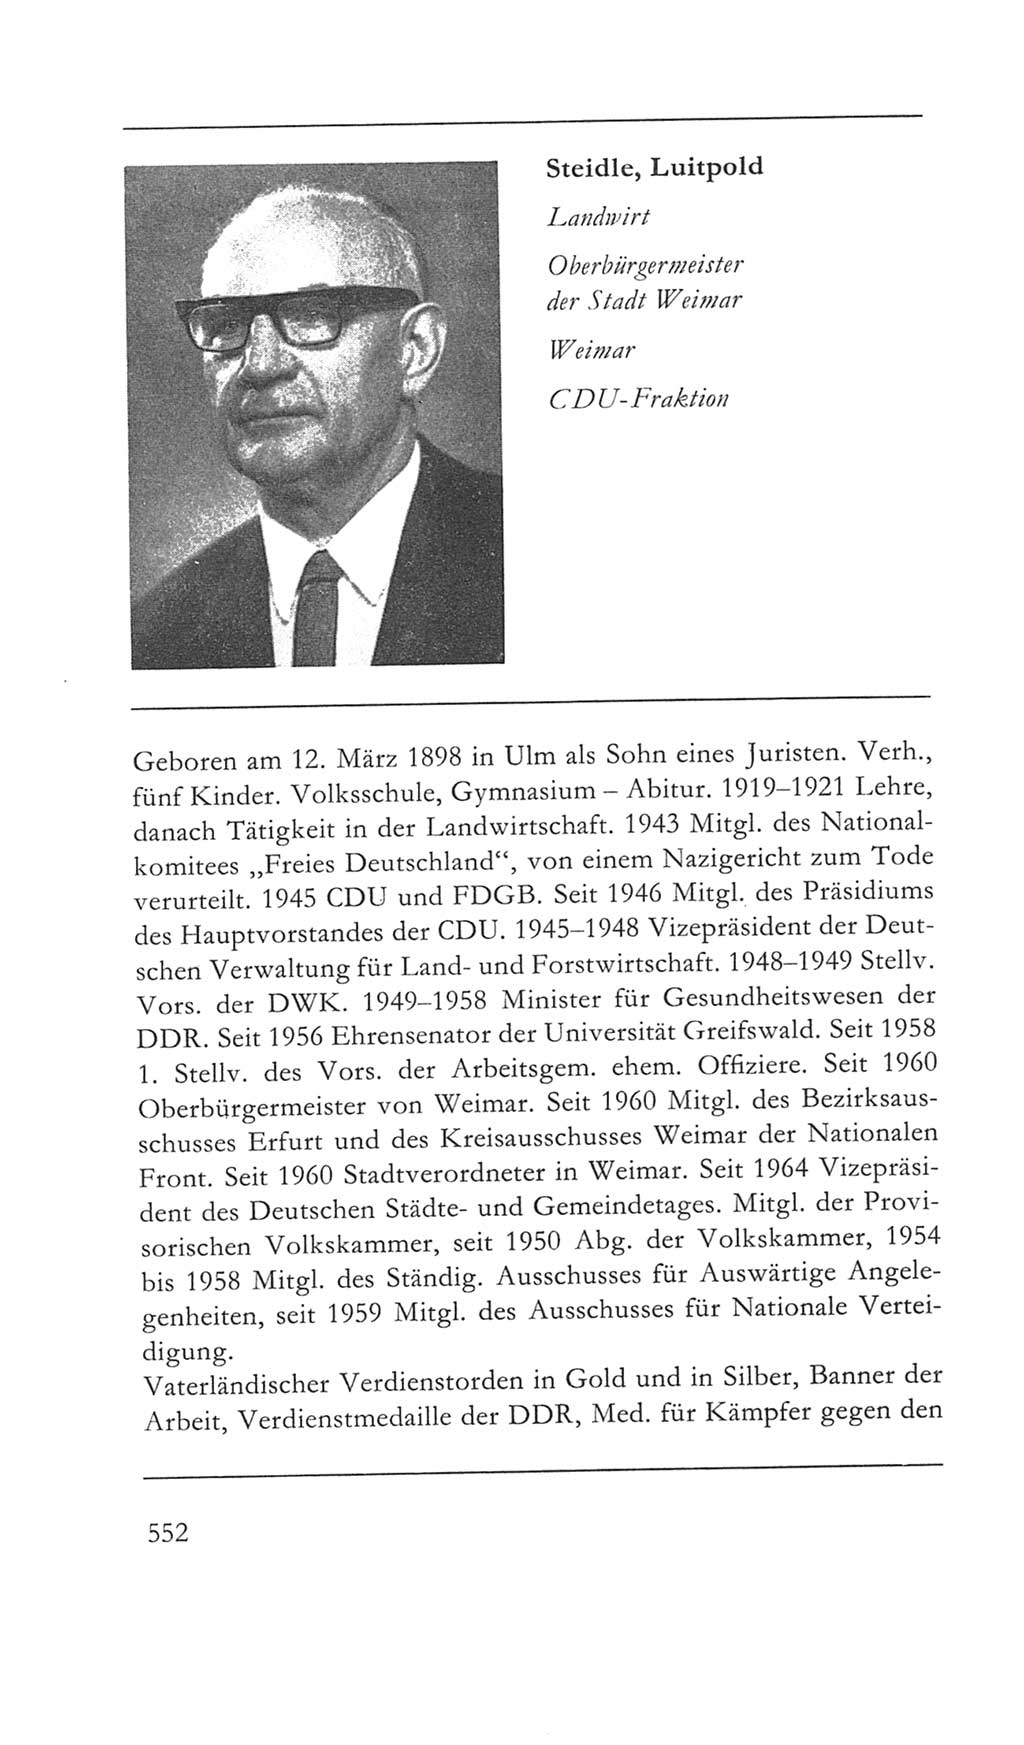 Volkskammer (VK) der Deutschen Demokratischen Republik (DDR) 5. Wahlperiode 1967-1971, Seite 552 (VK. DDR 5. WP. 1967-1971, S. 552)